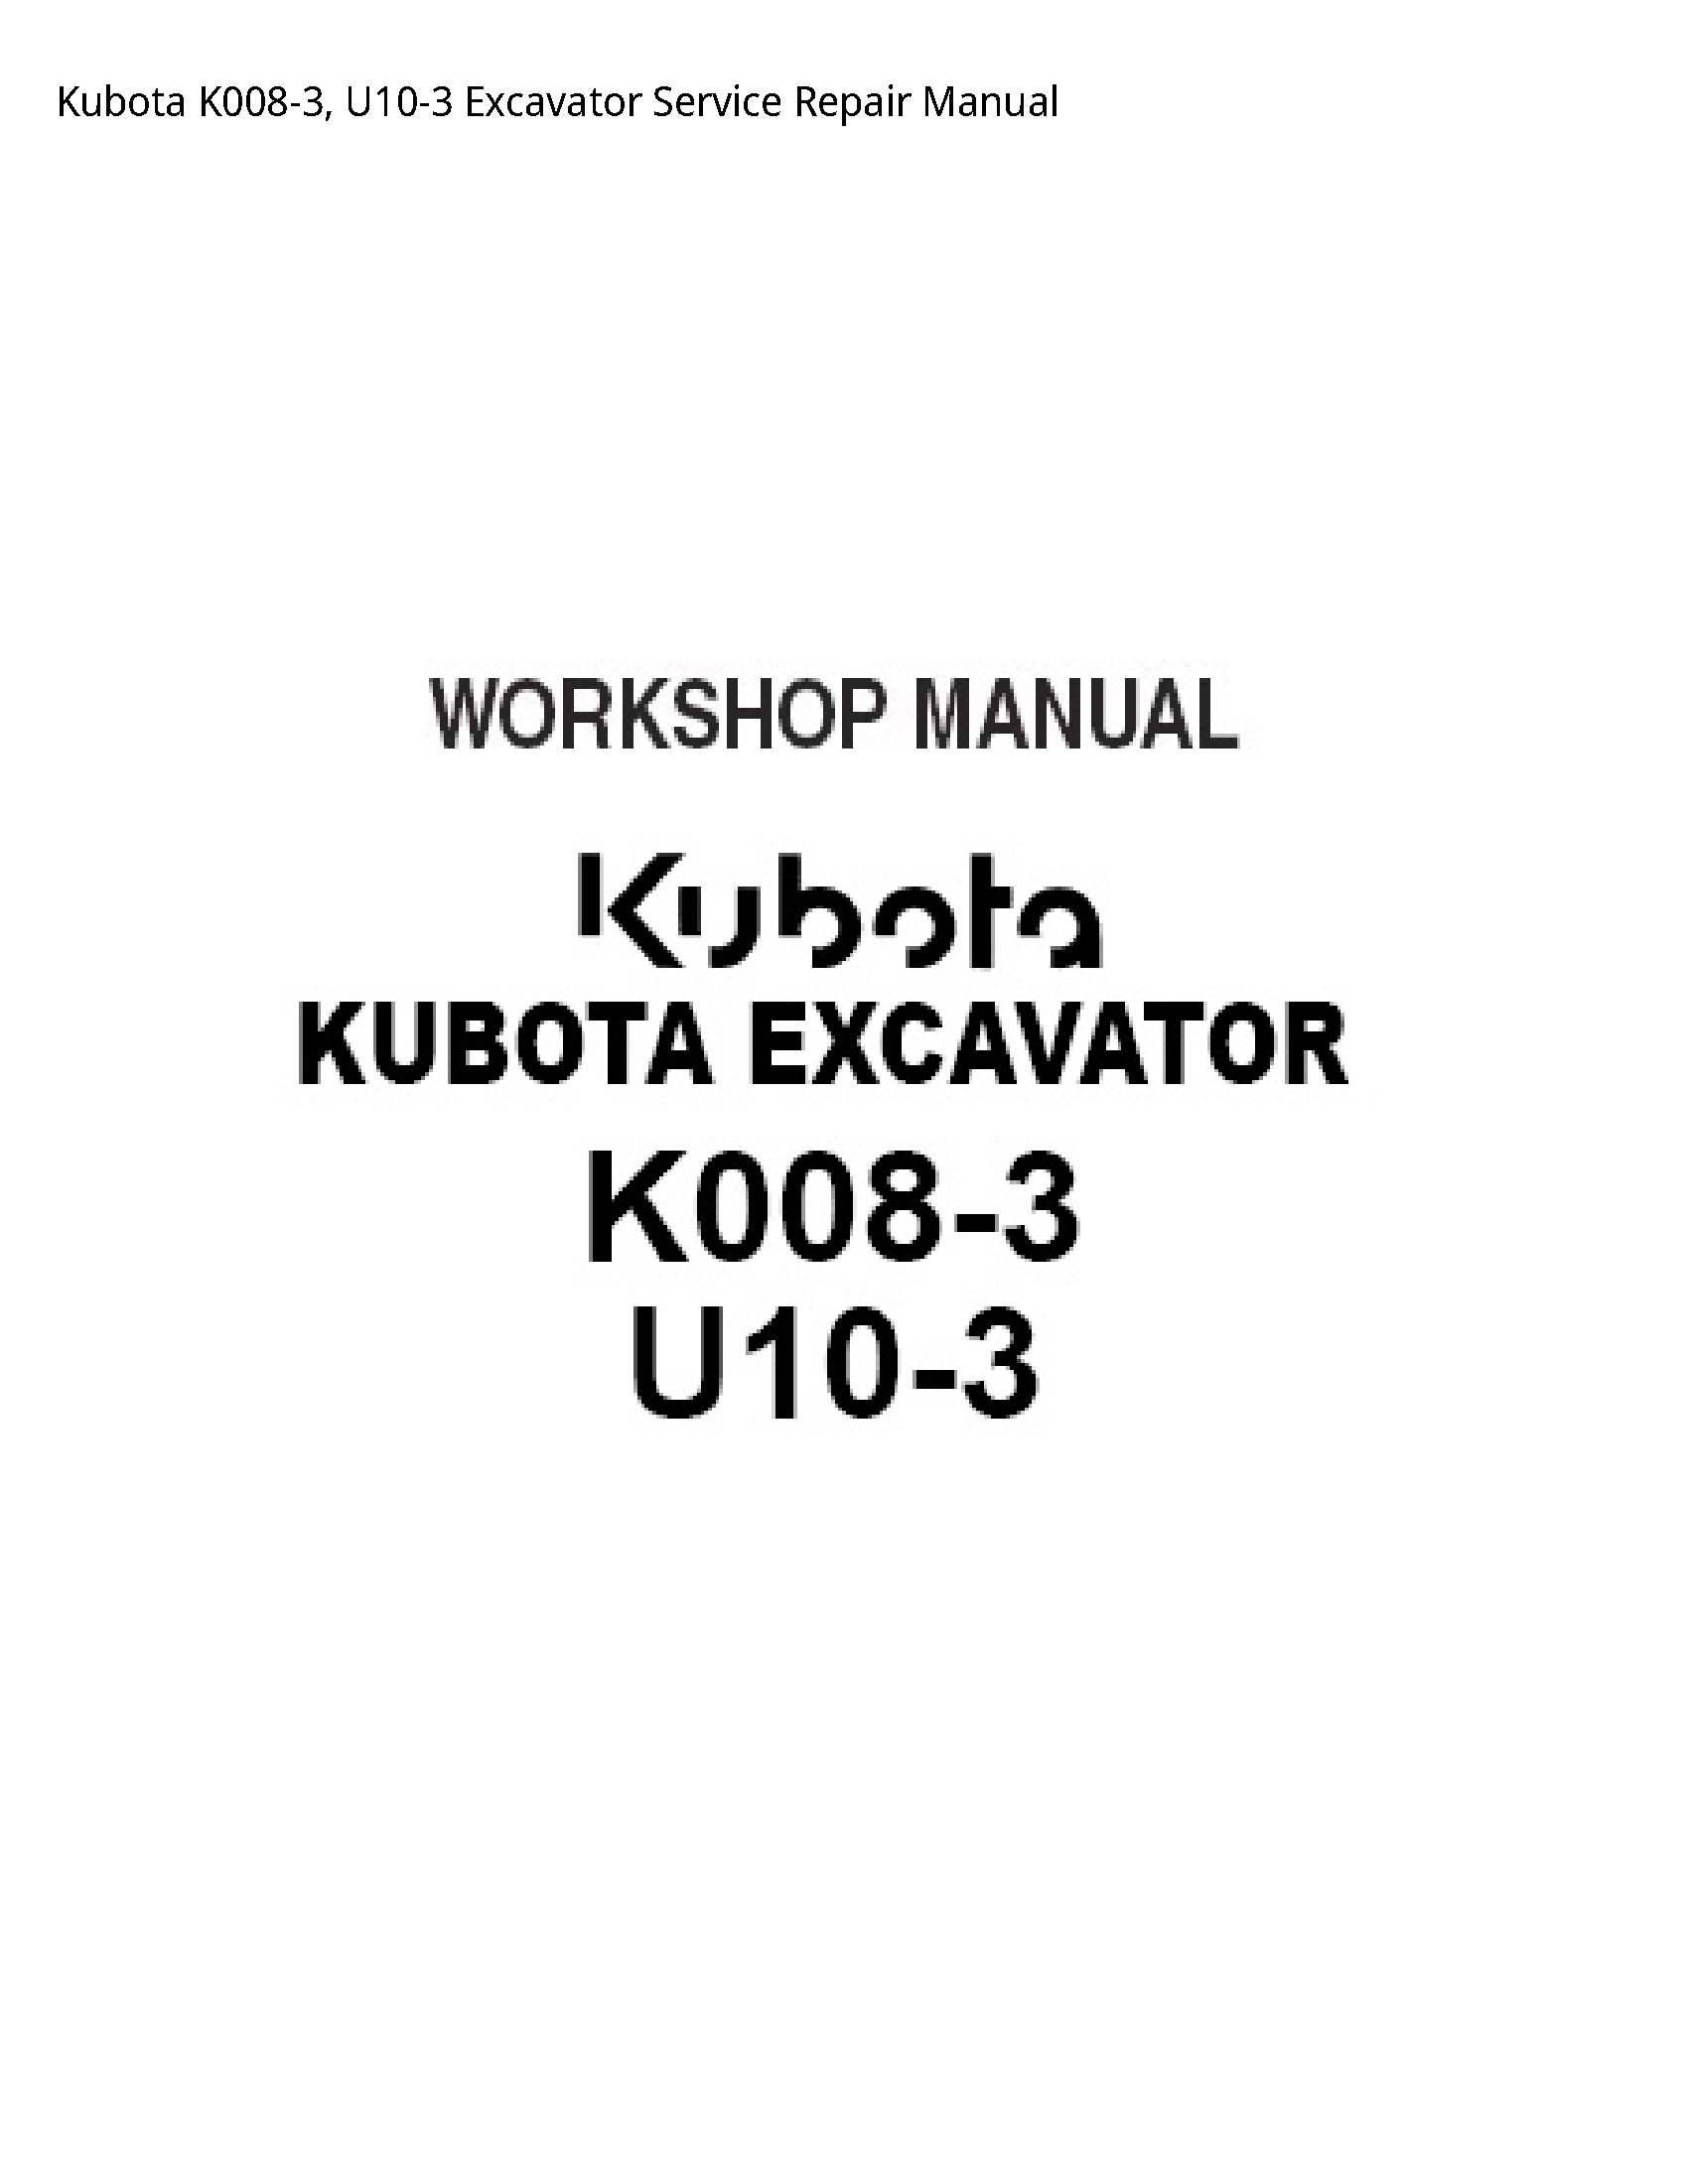 Kubota K008-3 Excavator manual